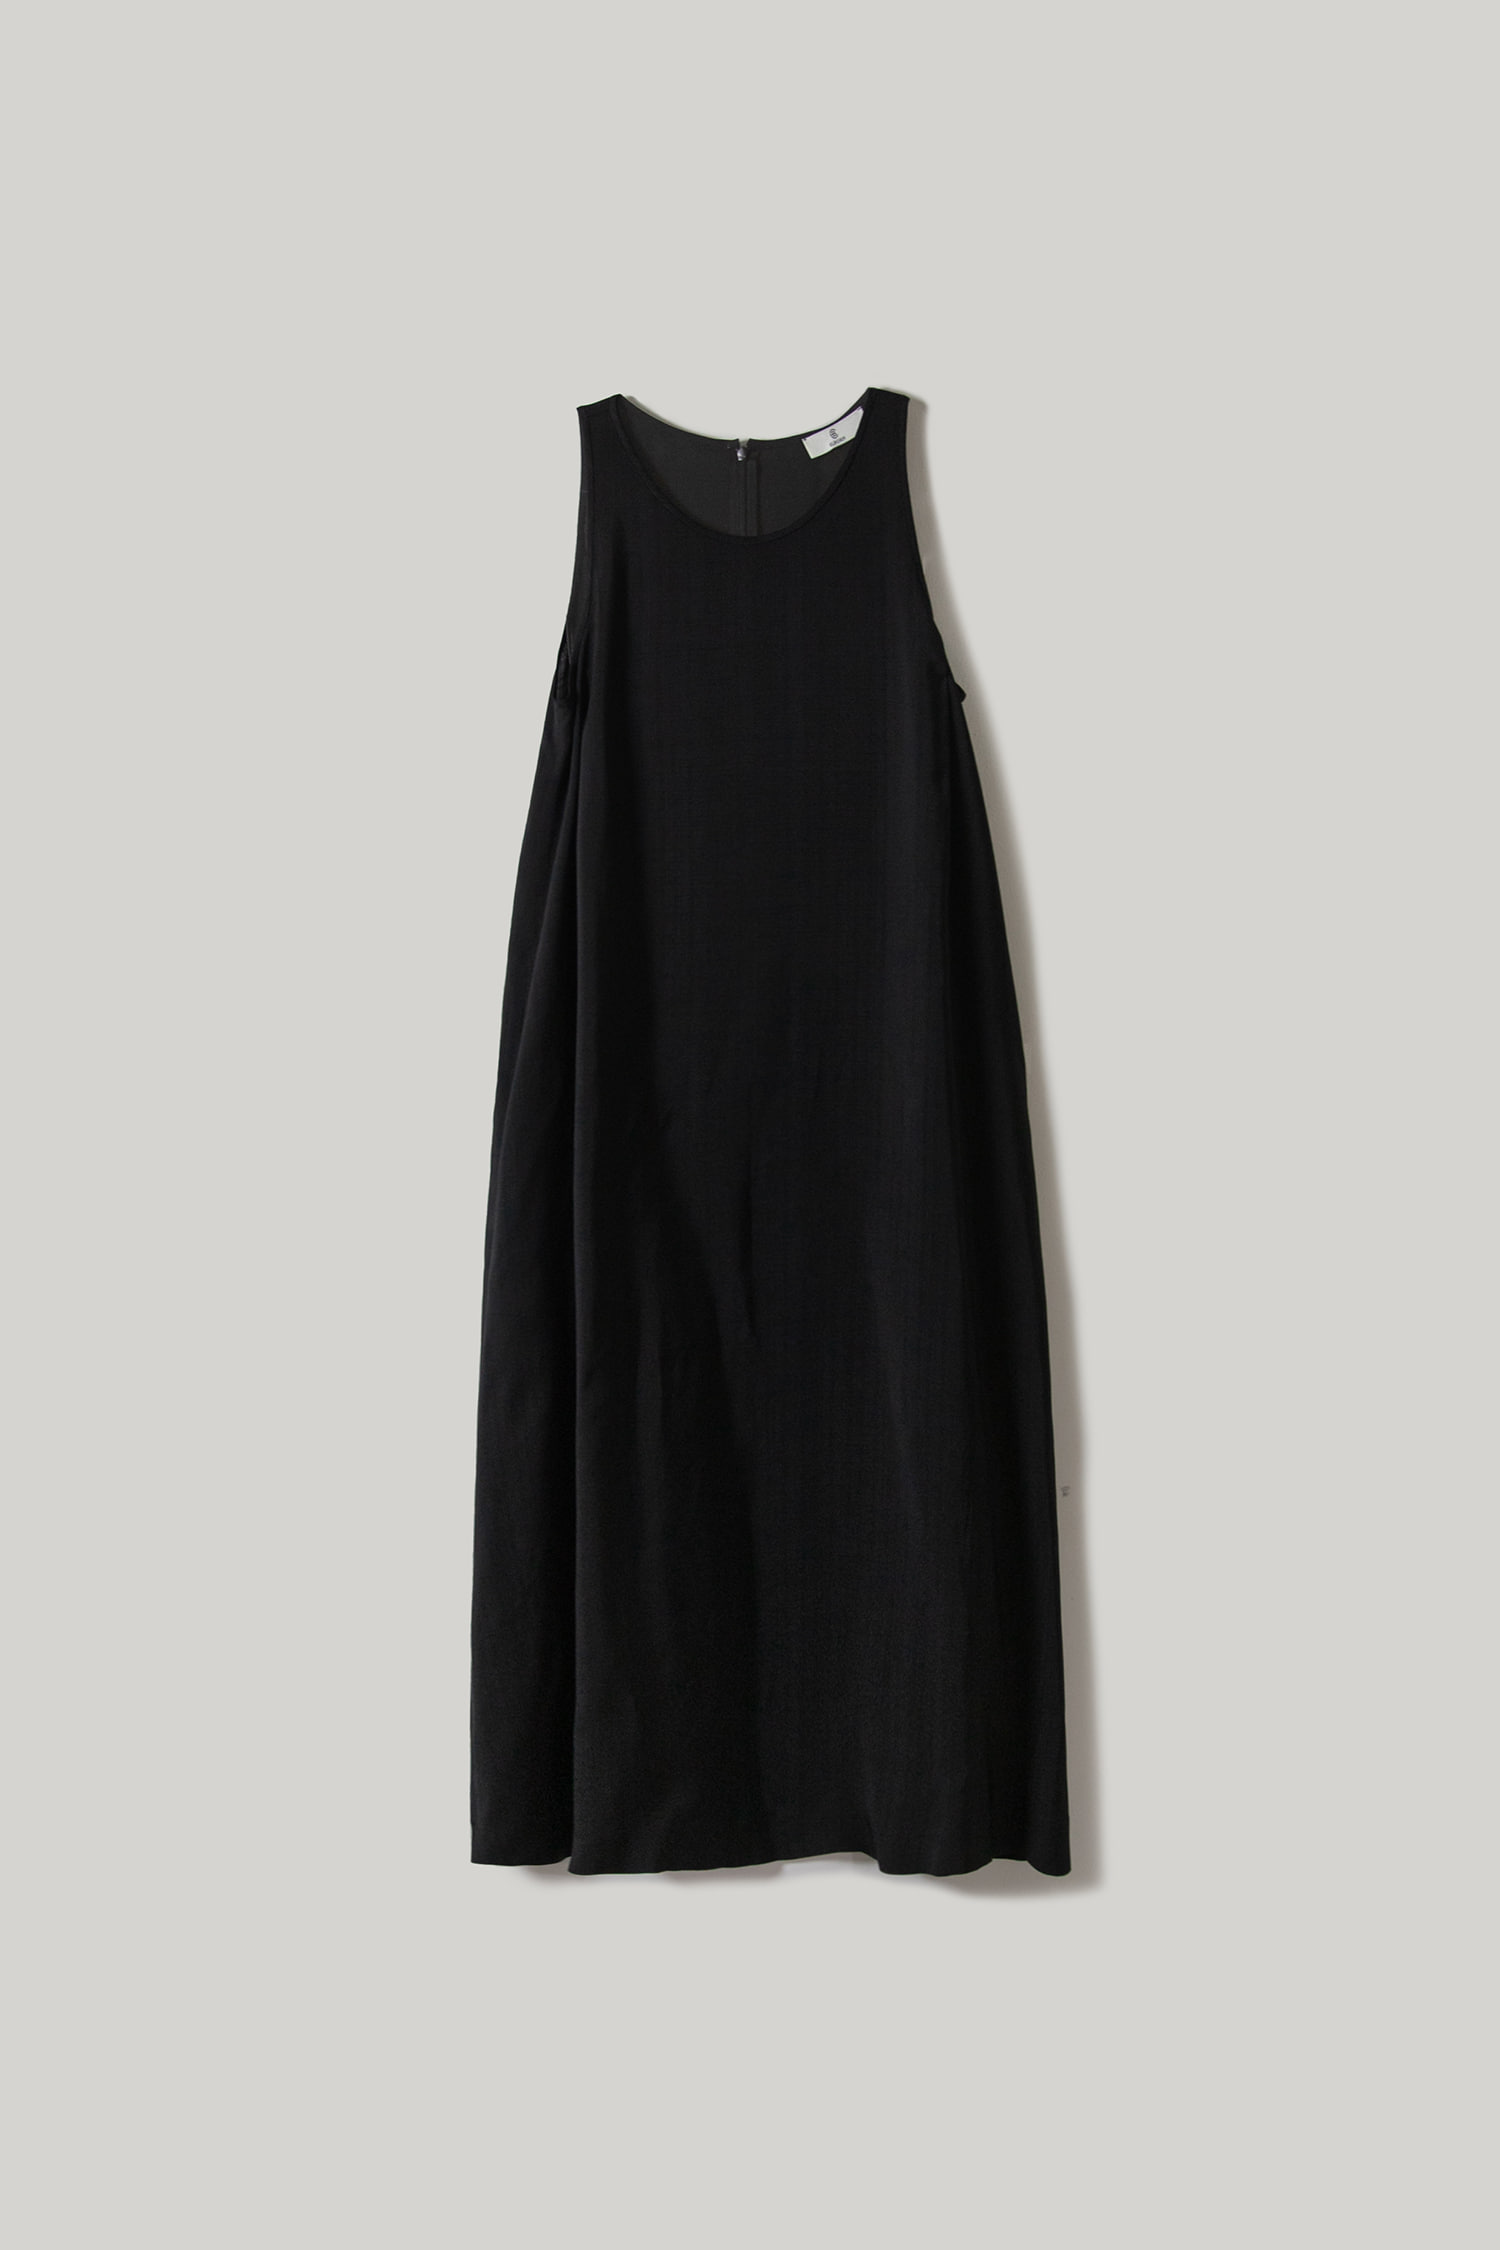 Perna Long Dress(Black)